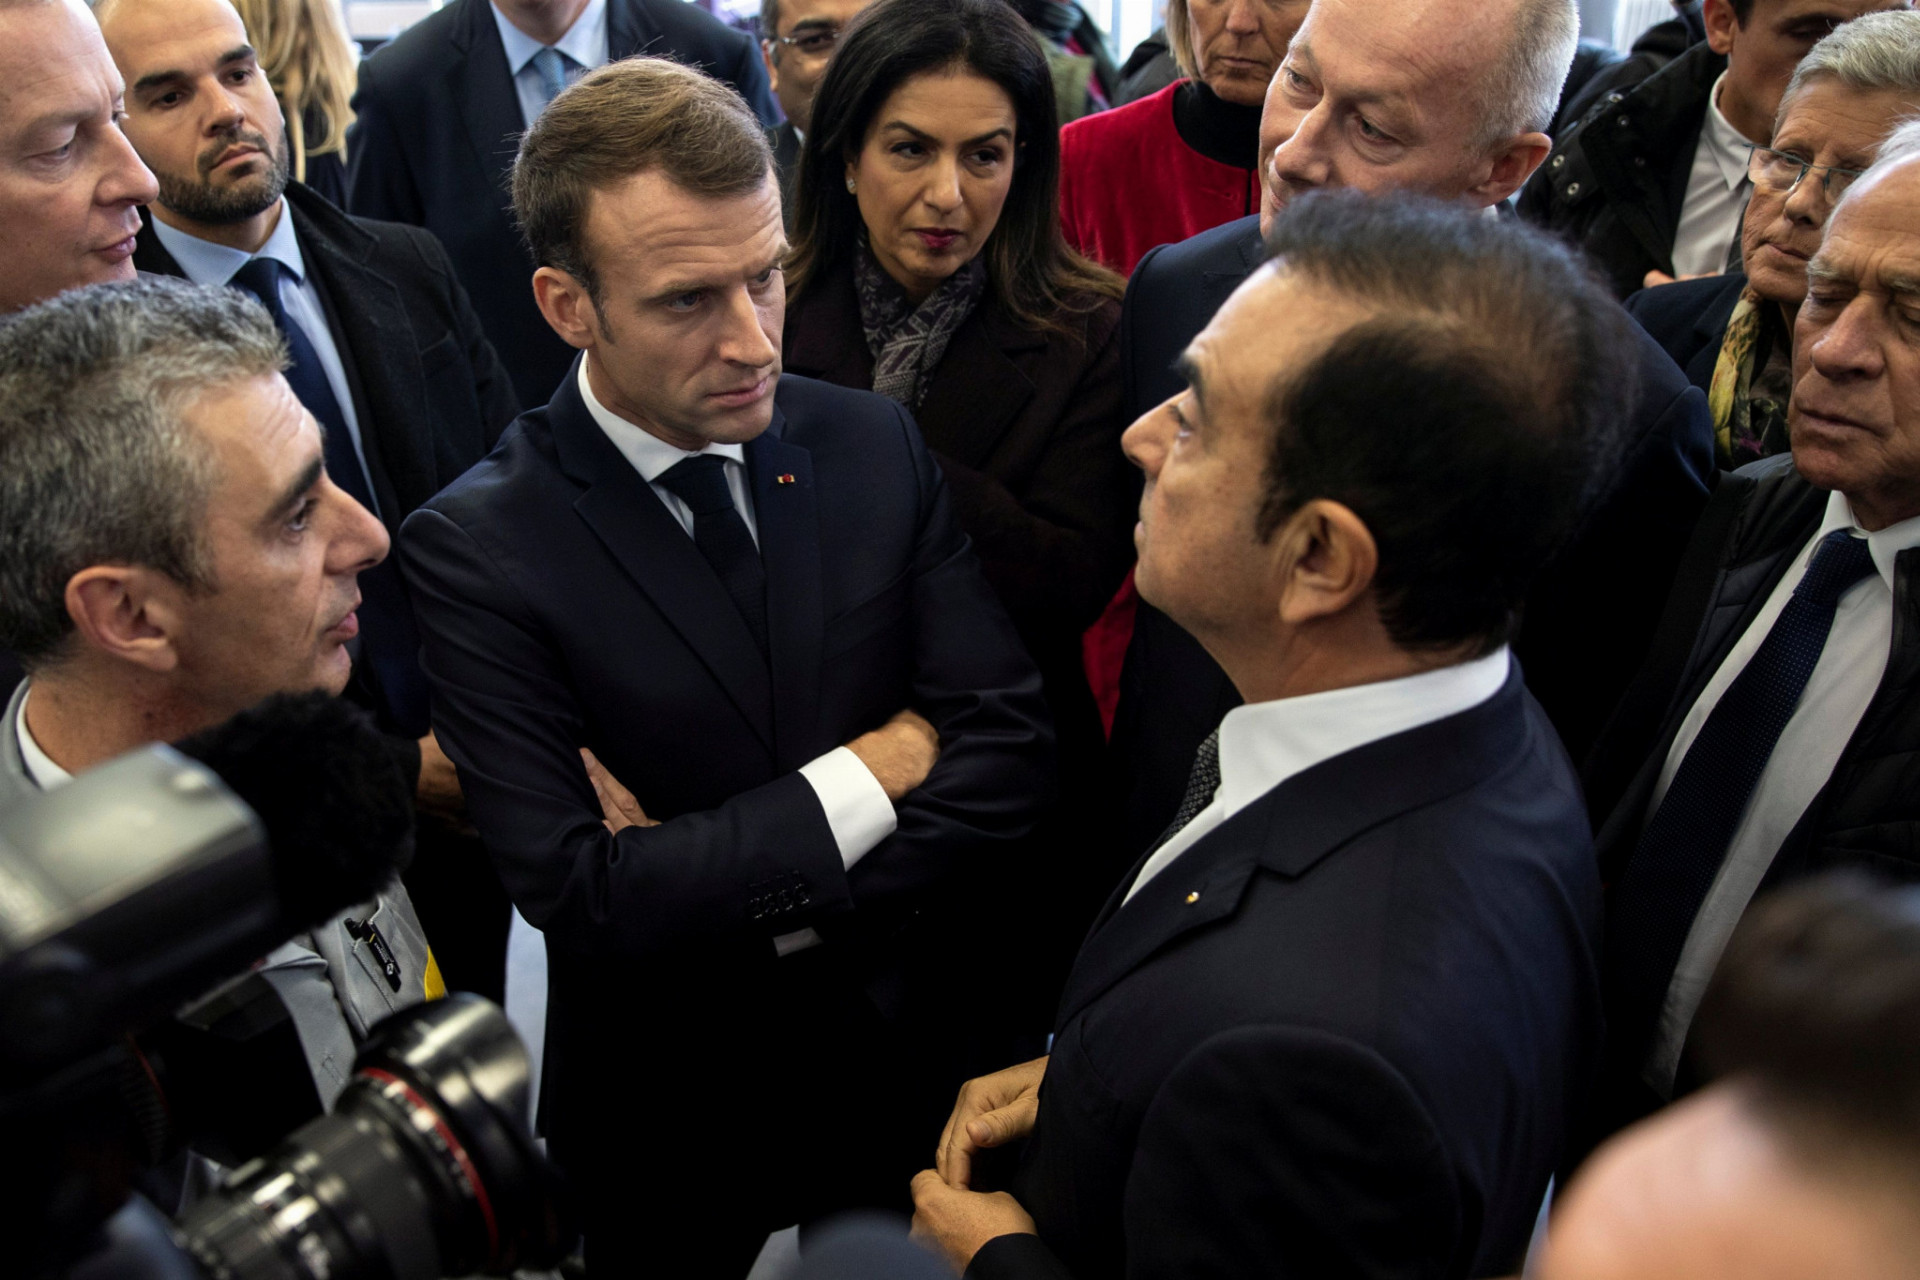 Francúzska vláda si želá, aby sa po zatknutí šéfa automobilky Renault-Nissan vedenia francúzskej časti koncernu ujala dočasná správa. Na snímke vľavo francúzsky prezident Emanuel Macron, vpravo je Carlos Ghosn.